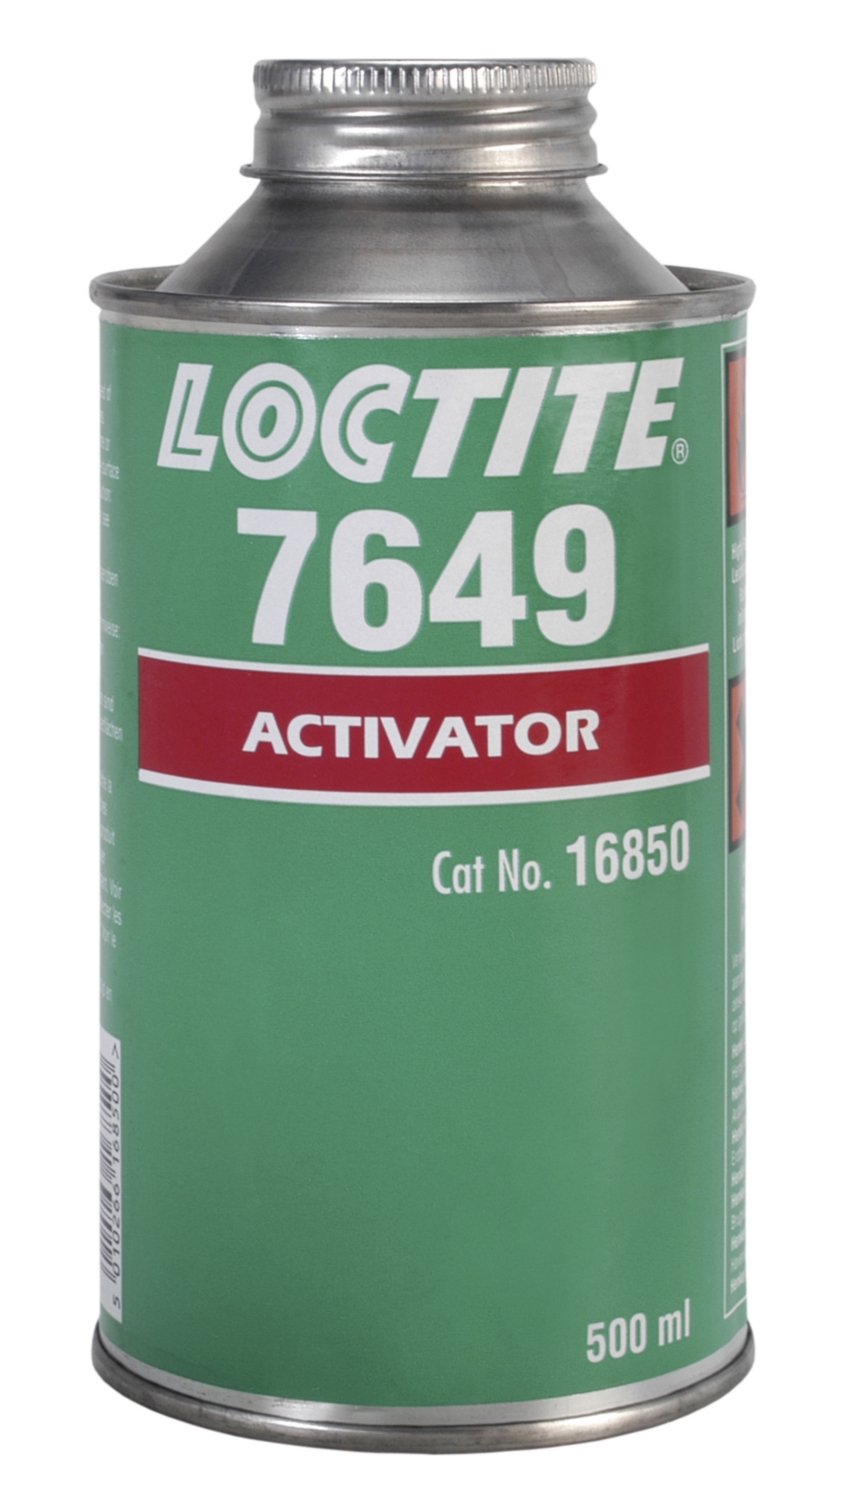 Loctite 7649 accélérateur de polymérisation Loctite